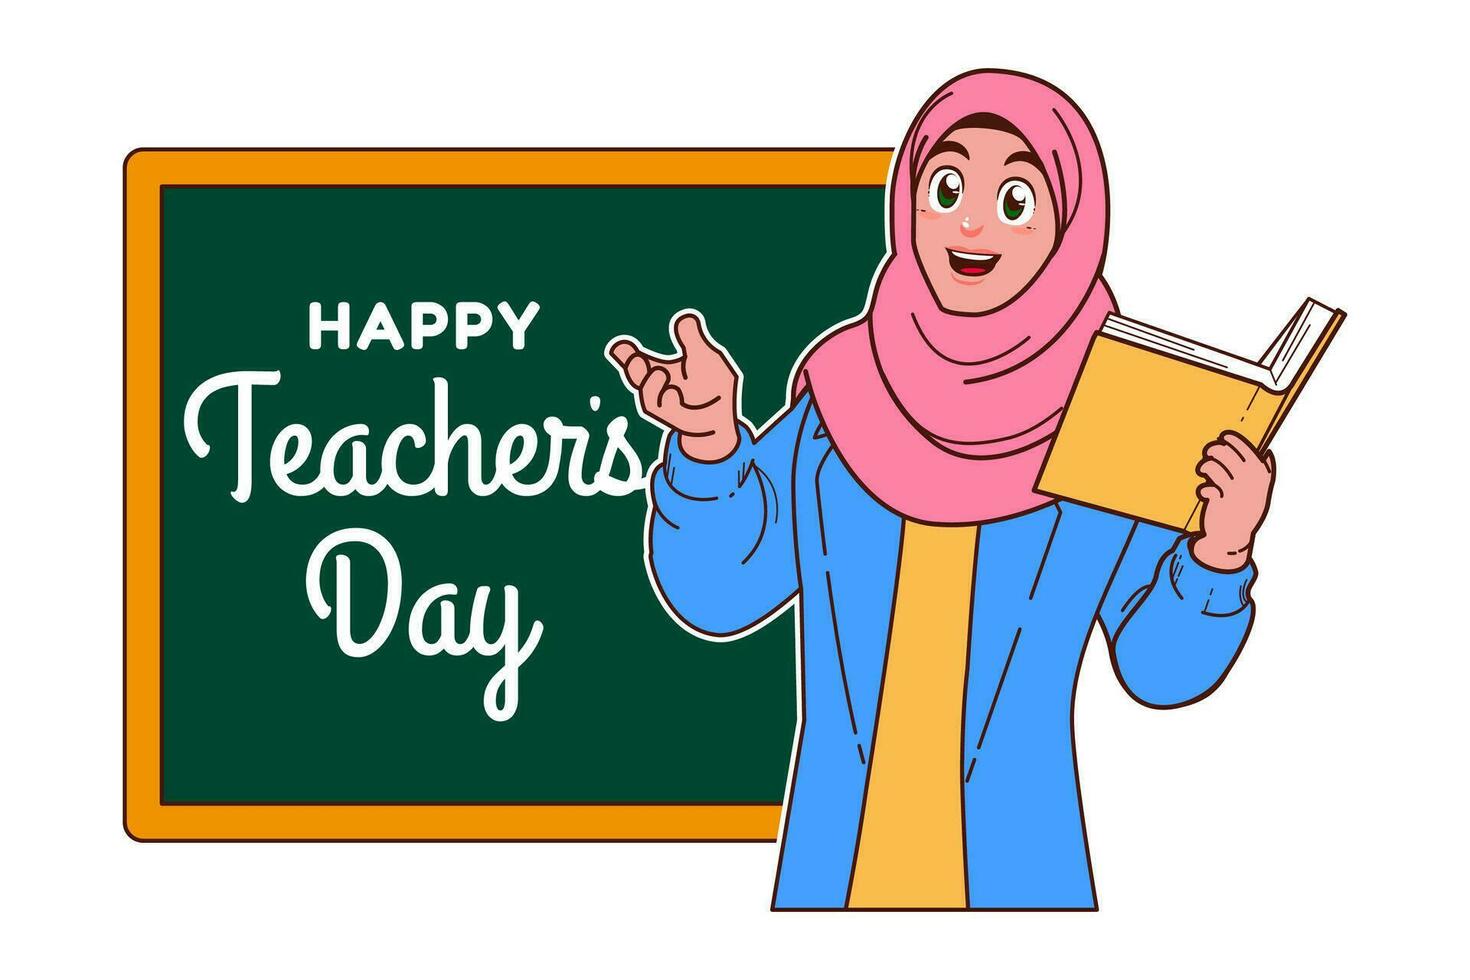 gelukkig leraren dag met moslim vrouw leraar en schoolbord vector